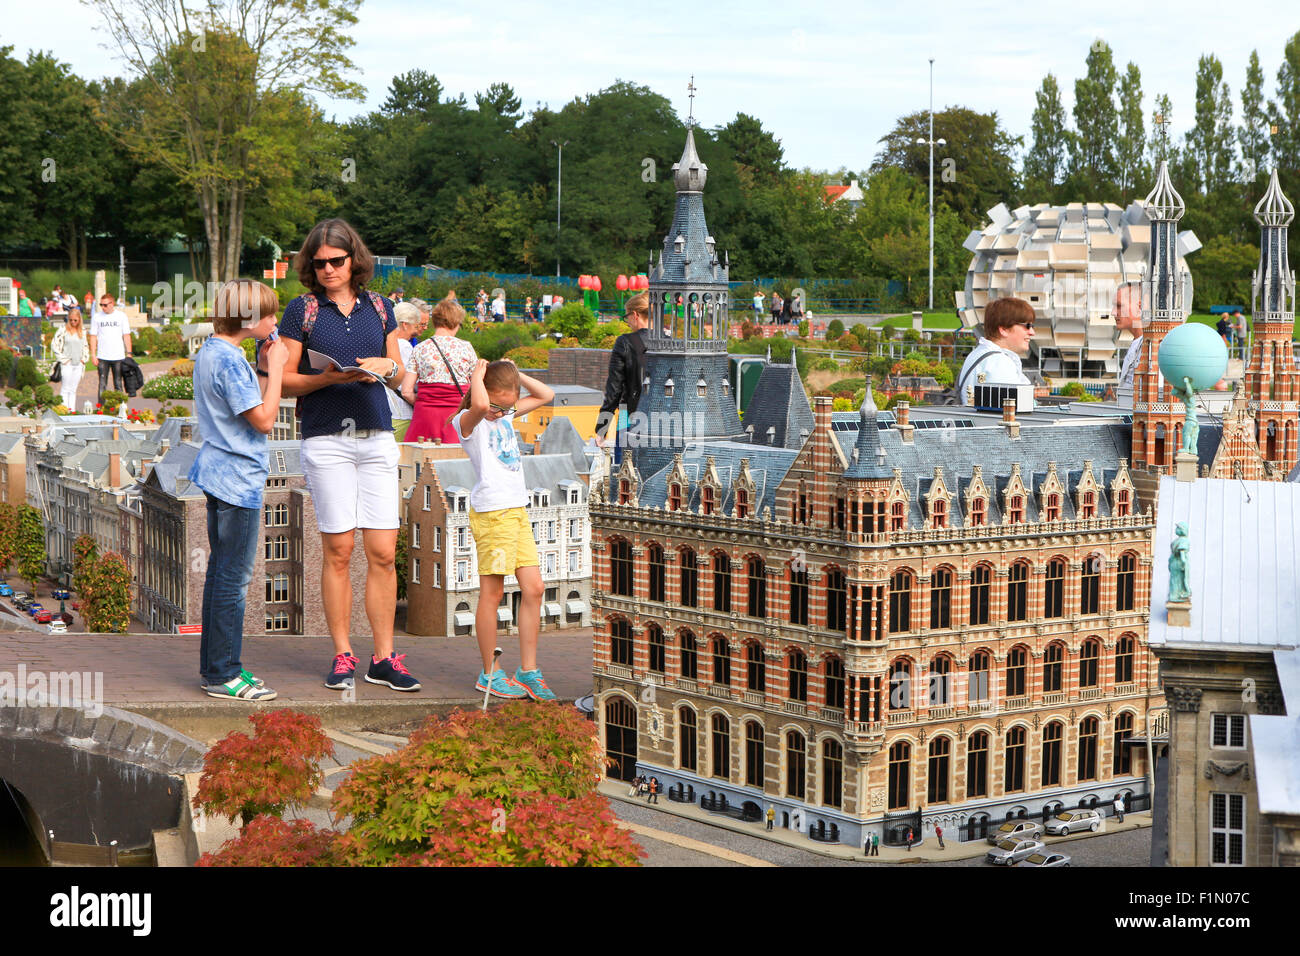 Berühmten Miniatur Park und touristische Attraktion von Madurodam, Sitz in den Haag, Heimat einer Reihe von 01:25 Skala Modell Repliken von Stockfoto